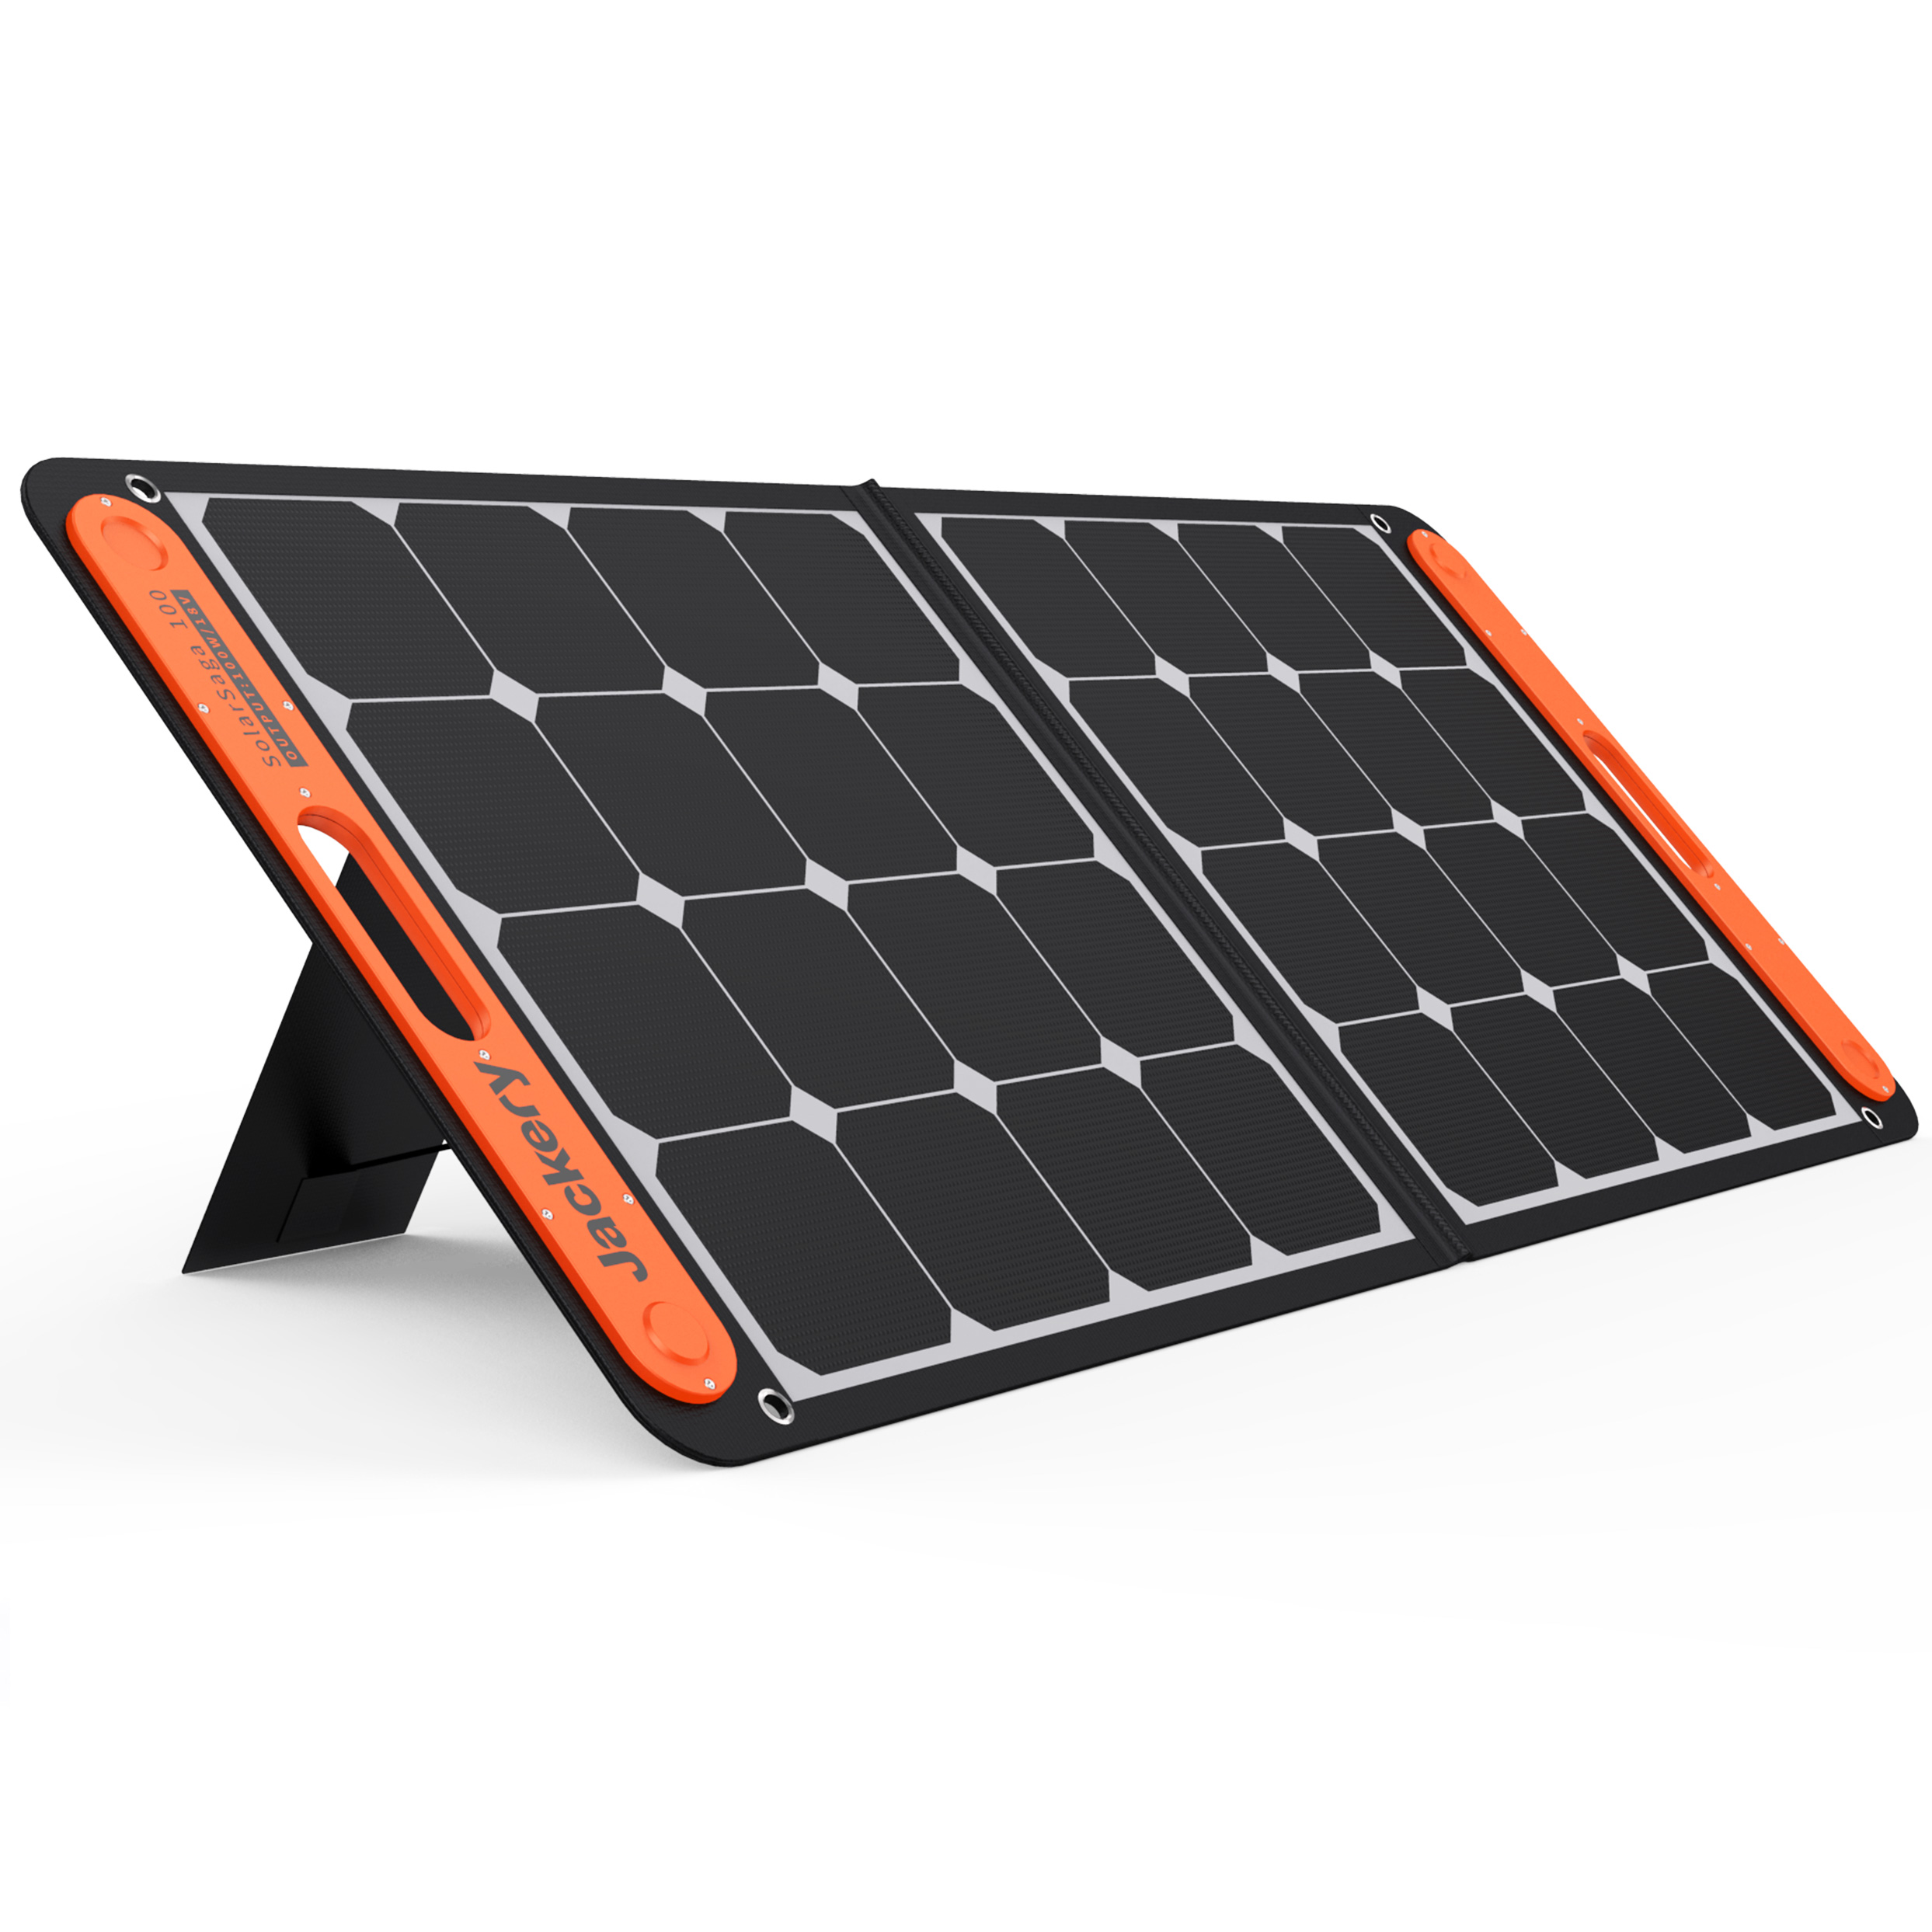 Відгуки портативна сонячна батарея Jackery SolarSaga 100W в Україні